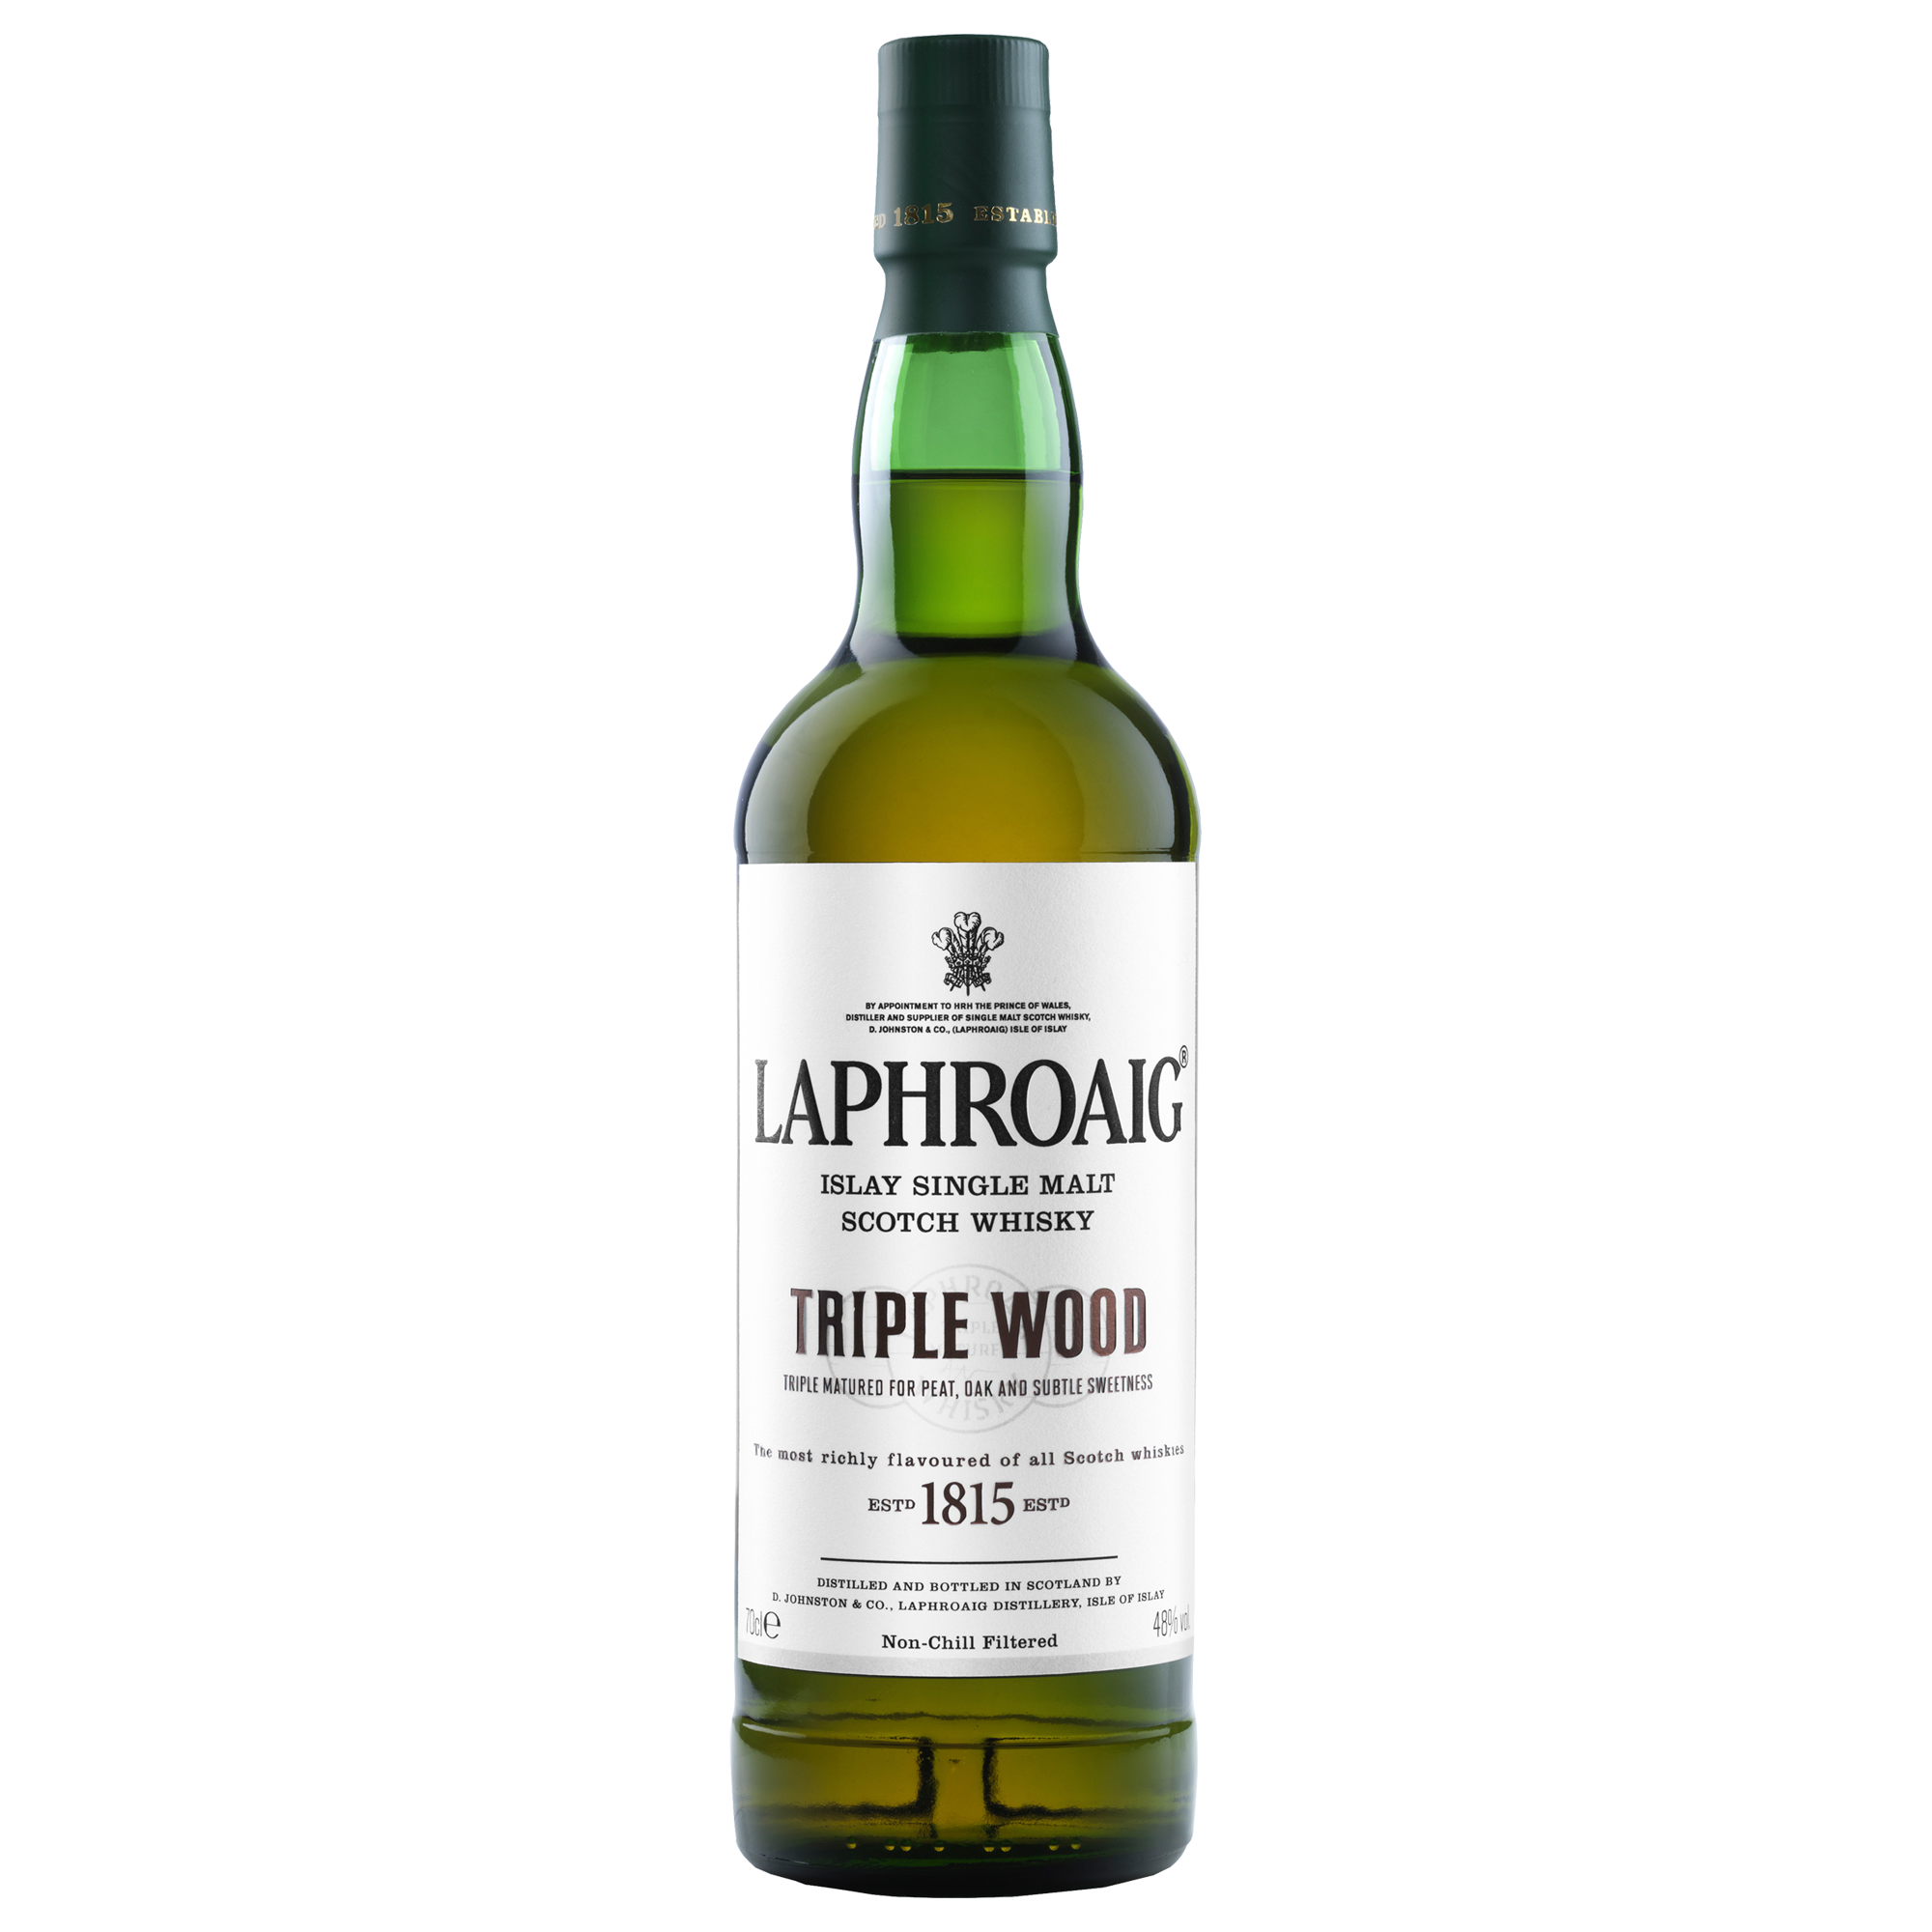 Laphroaig scotch